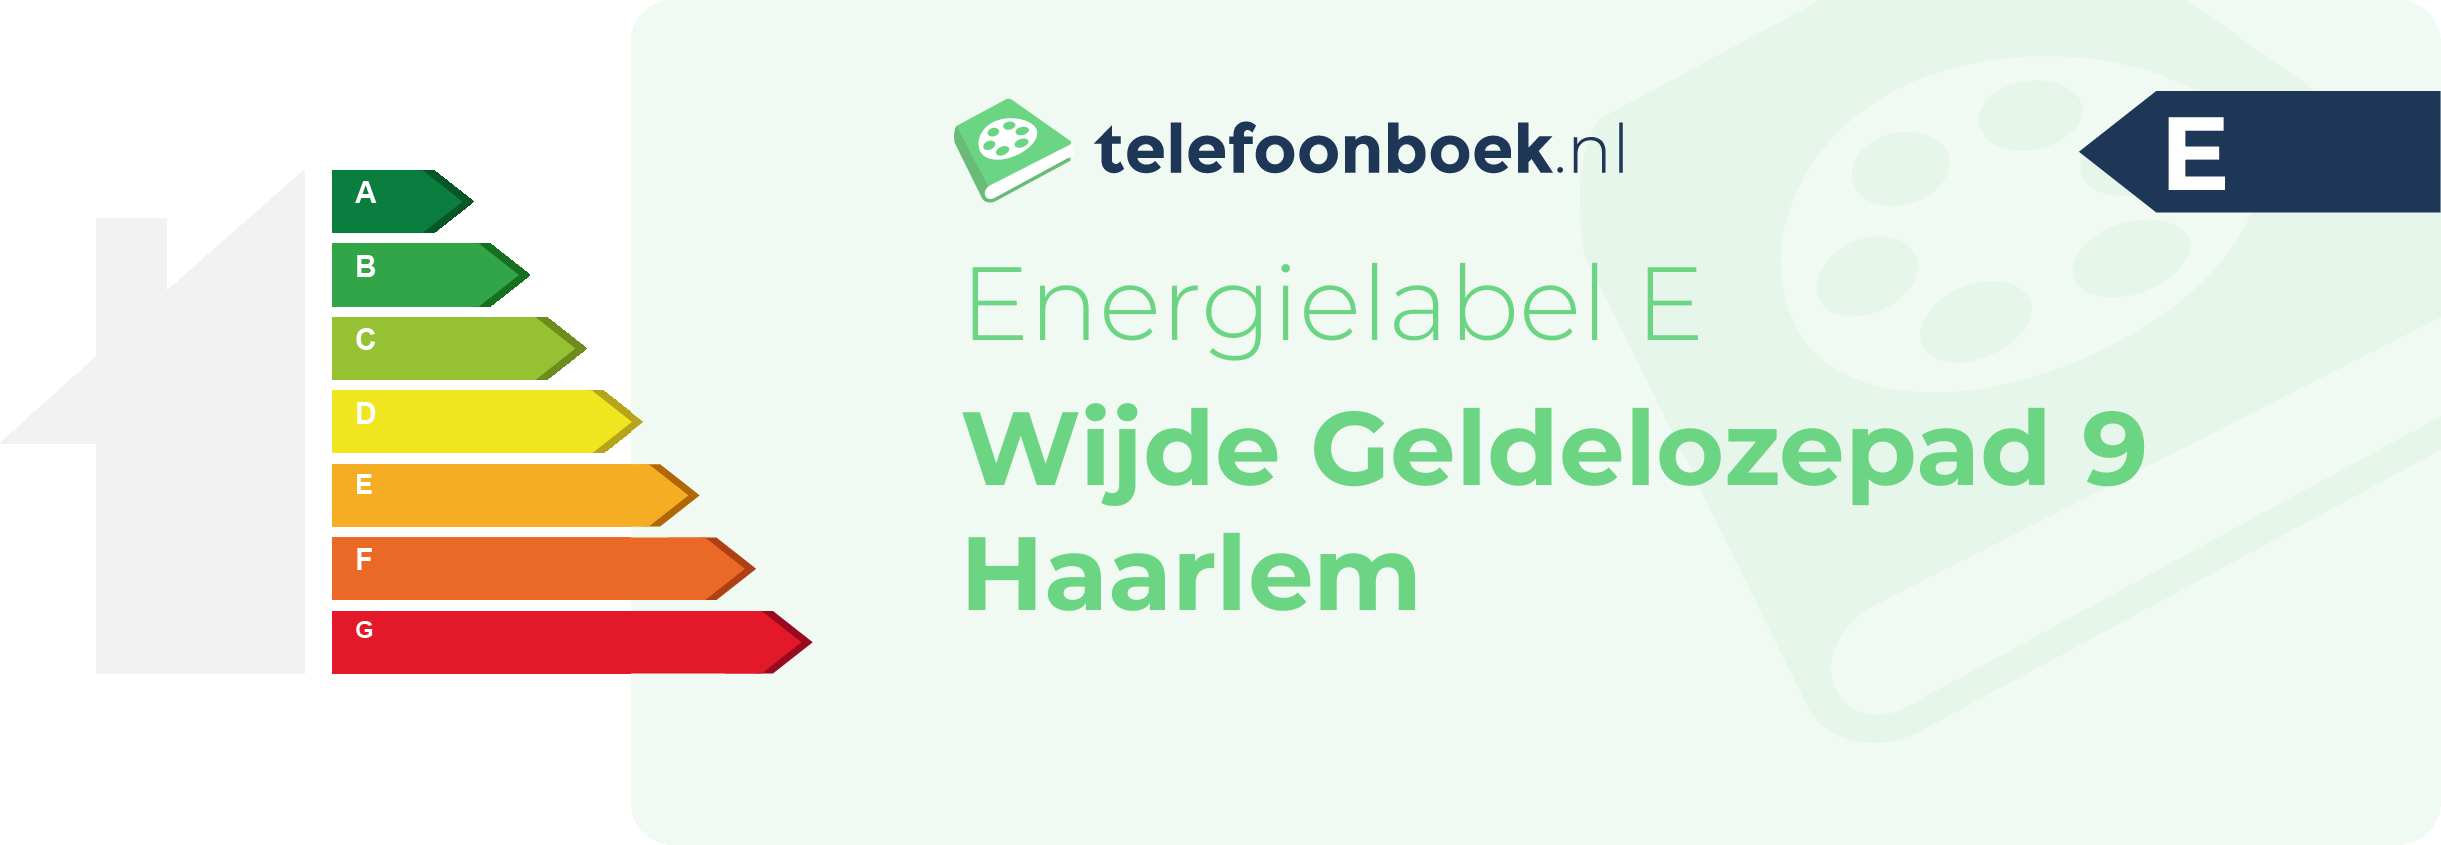 Energielabel Wijde Geldelozepad 9 Haarlem